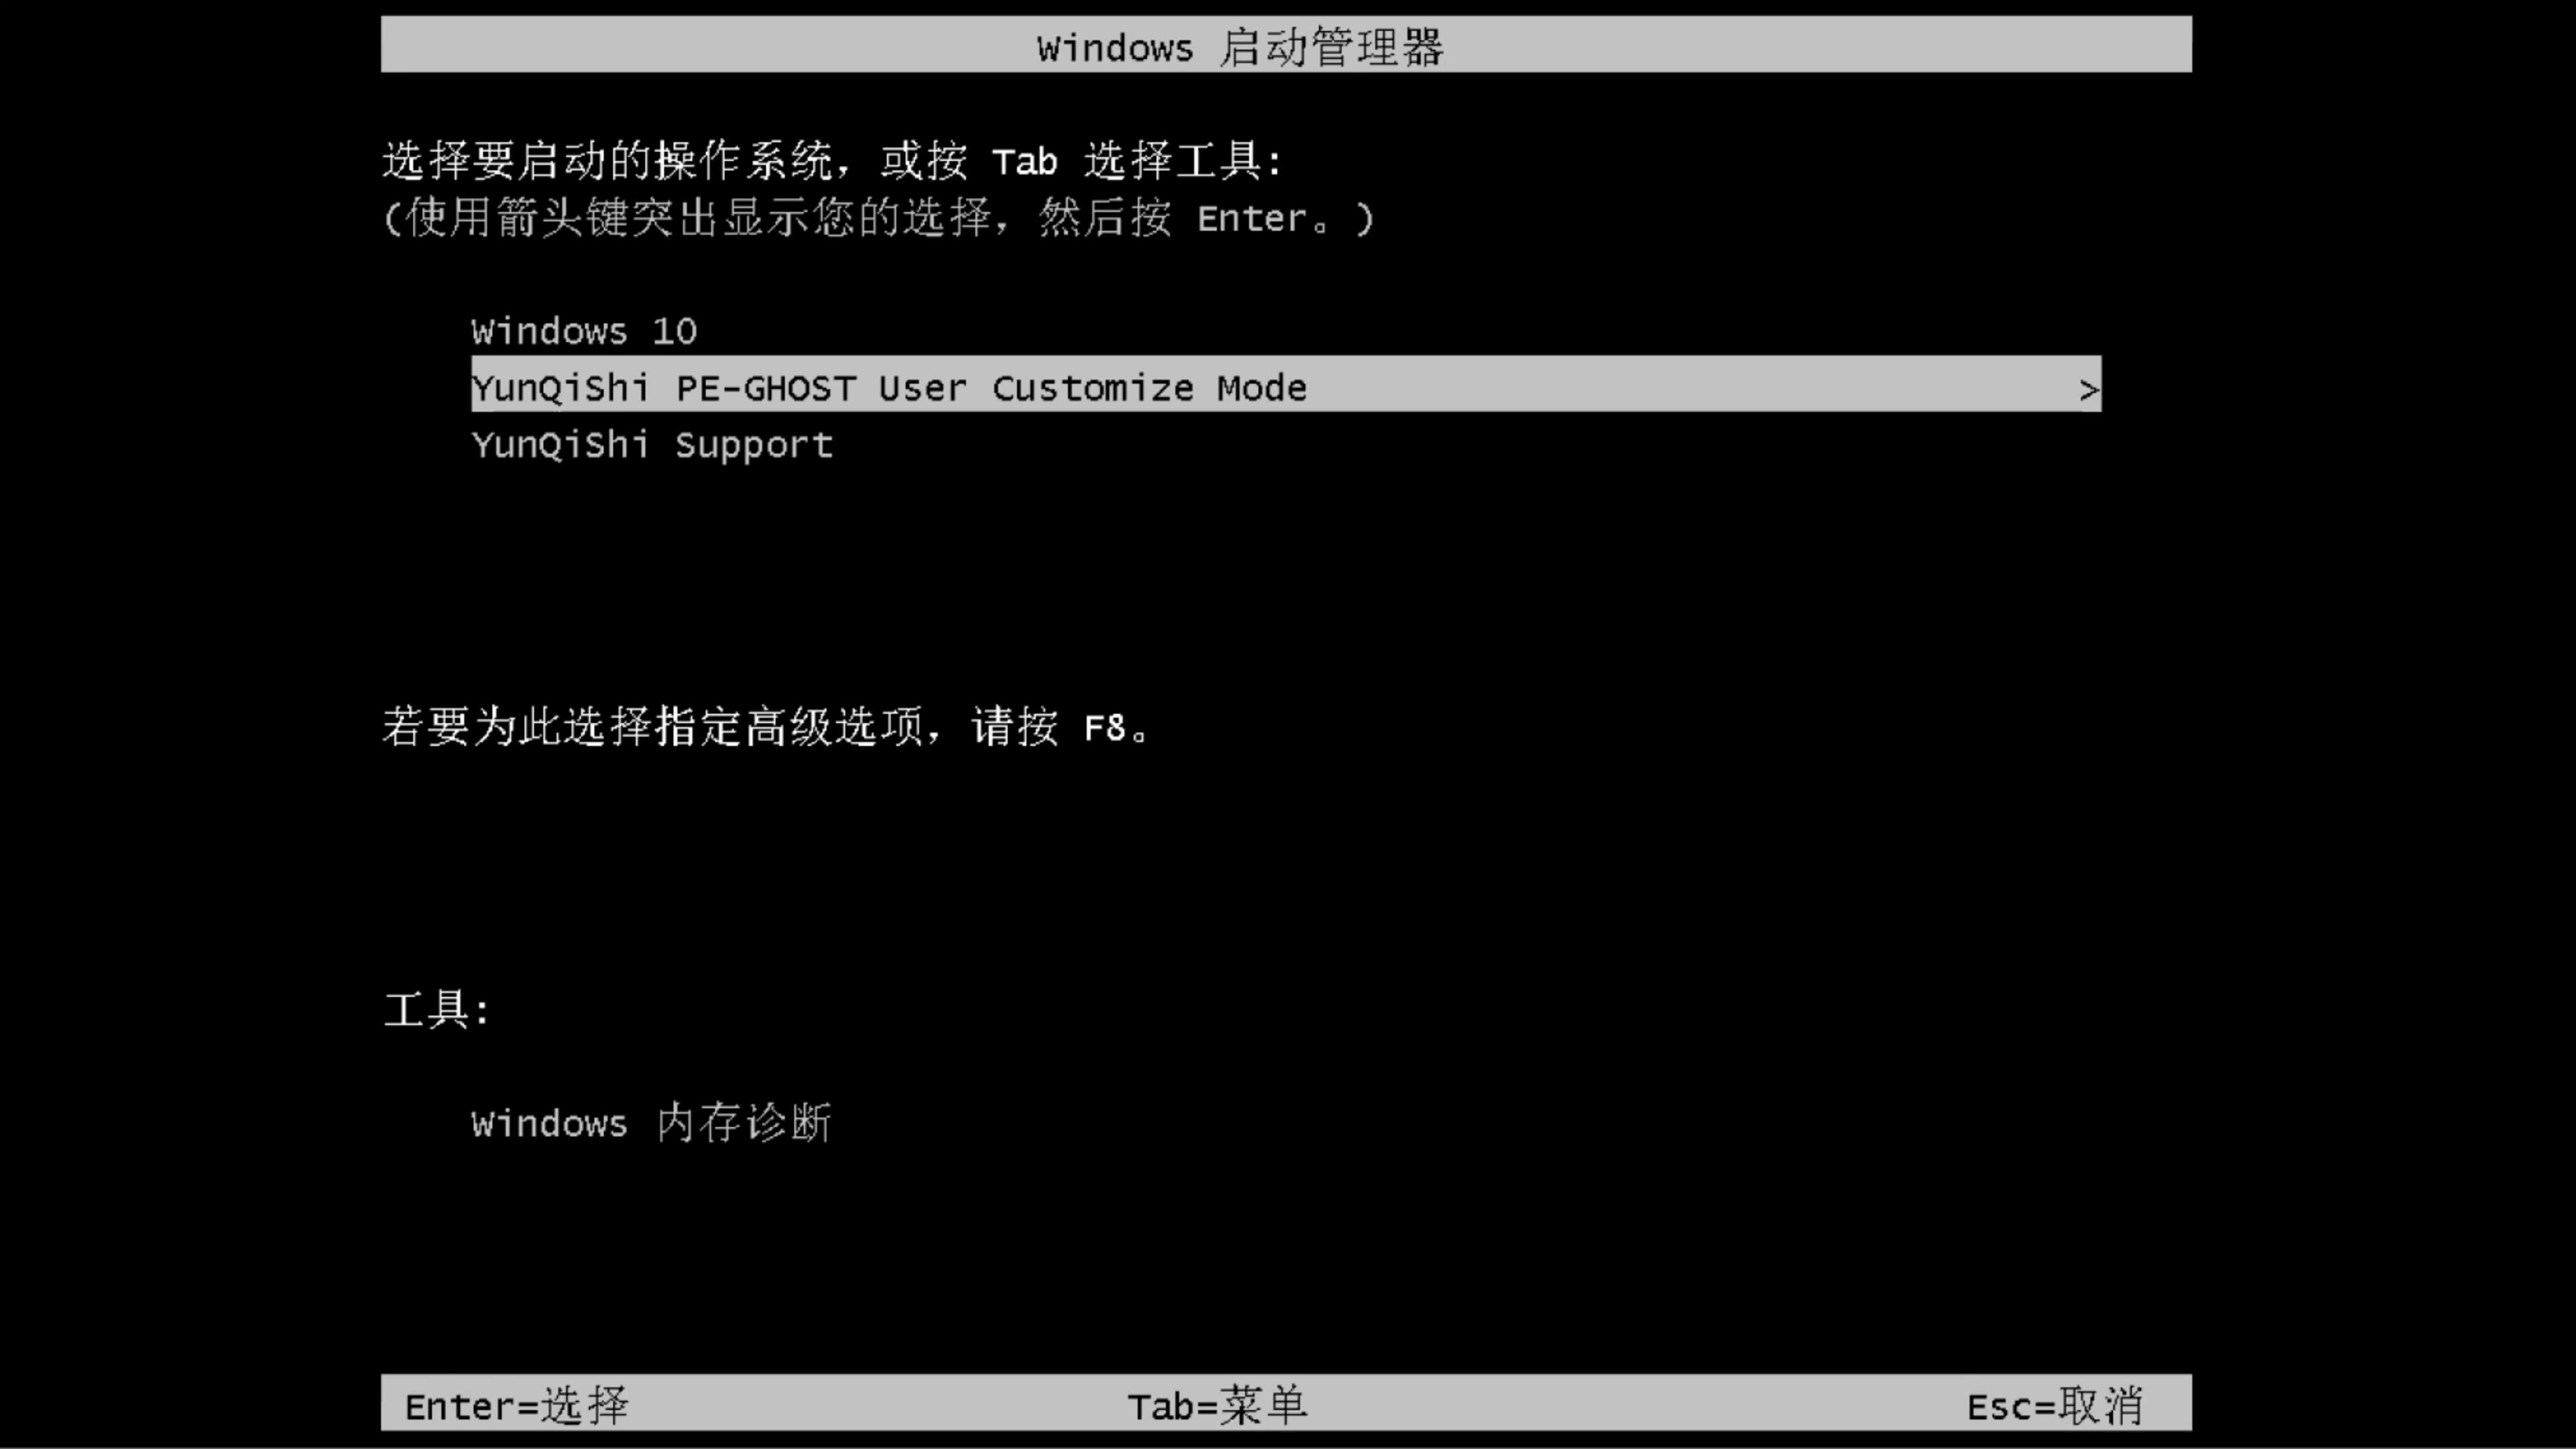 神州笔记本专用系统  windows7 x64位 SP1 旗舰装机版下载 V2021.11(9)